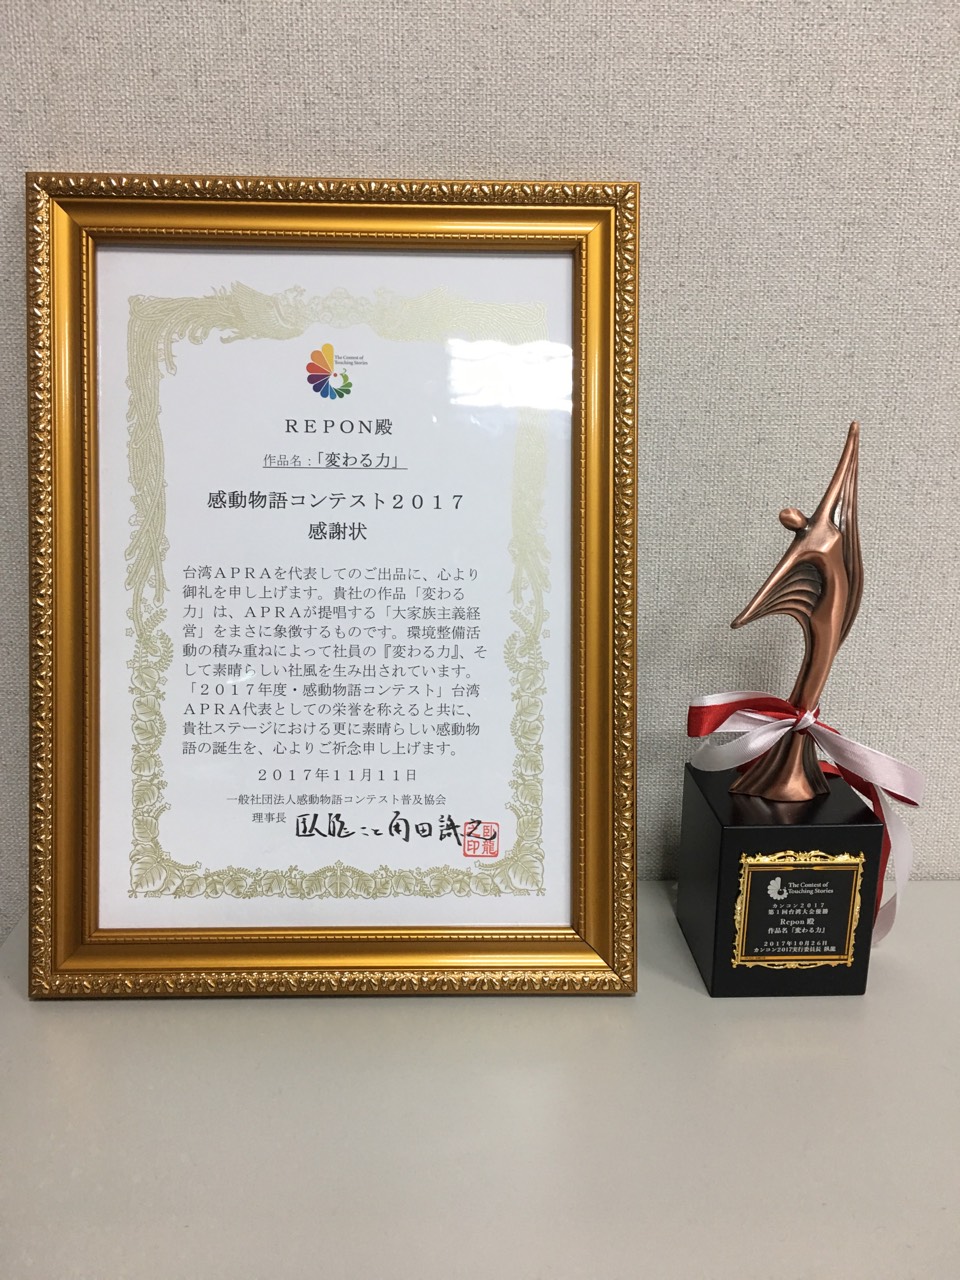 REPON荣获台湾地区APRA第一届感动影片竞赛第一名